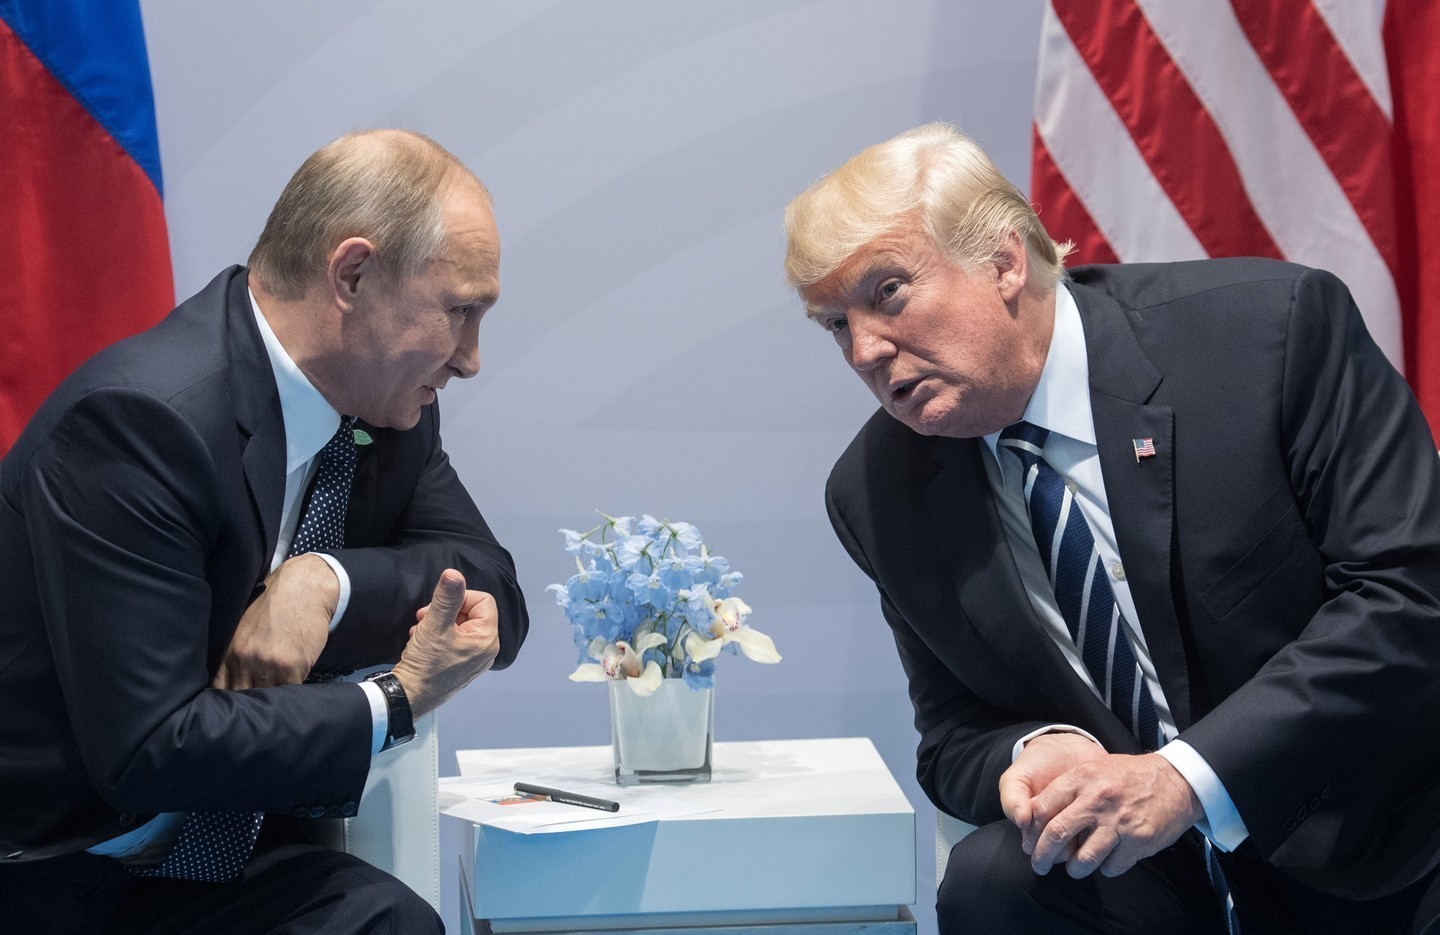 "Путину с Трампом совершенно не о чем договариваться", - громкое заявление российского политика Гозмана